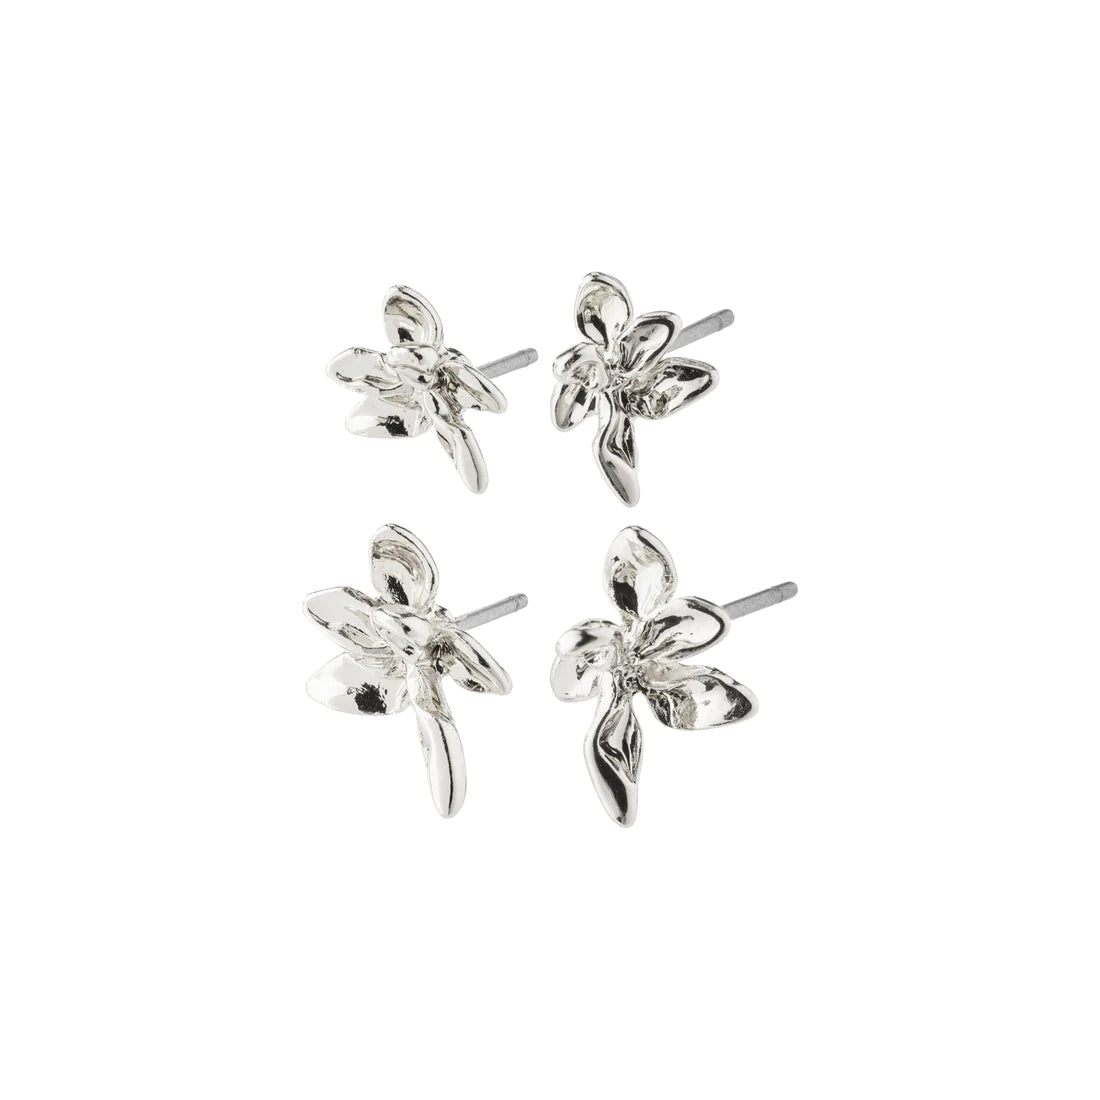 Riko Earrings 2-in-1 set - silver